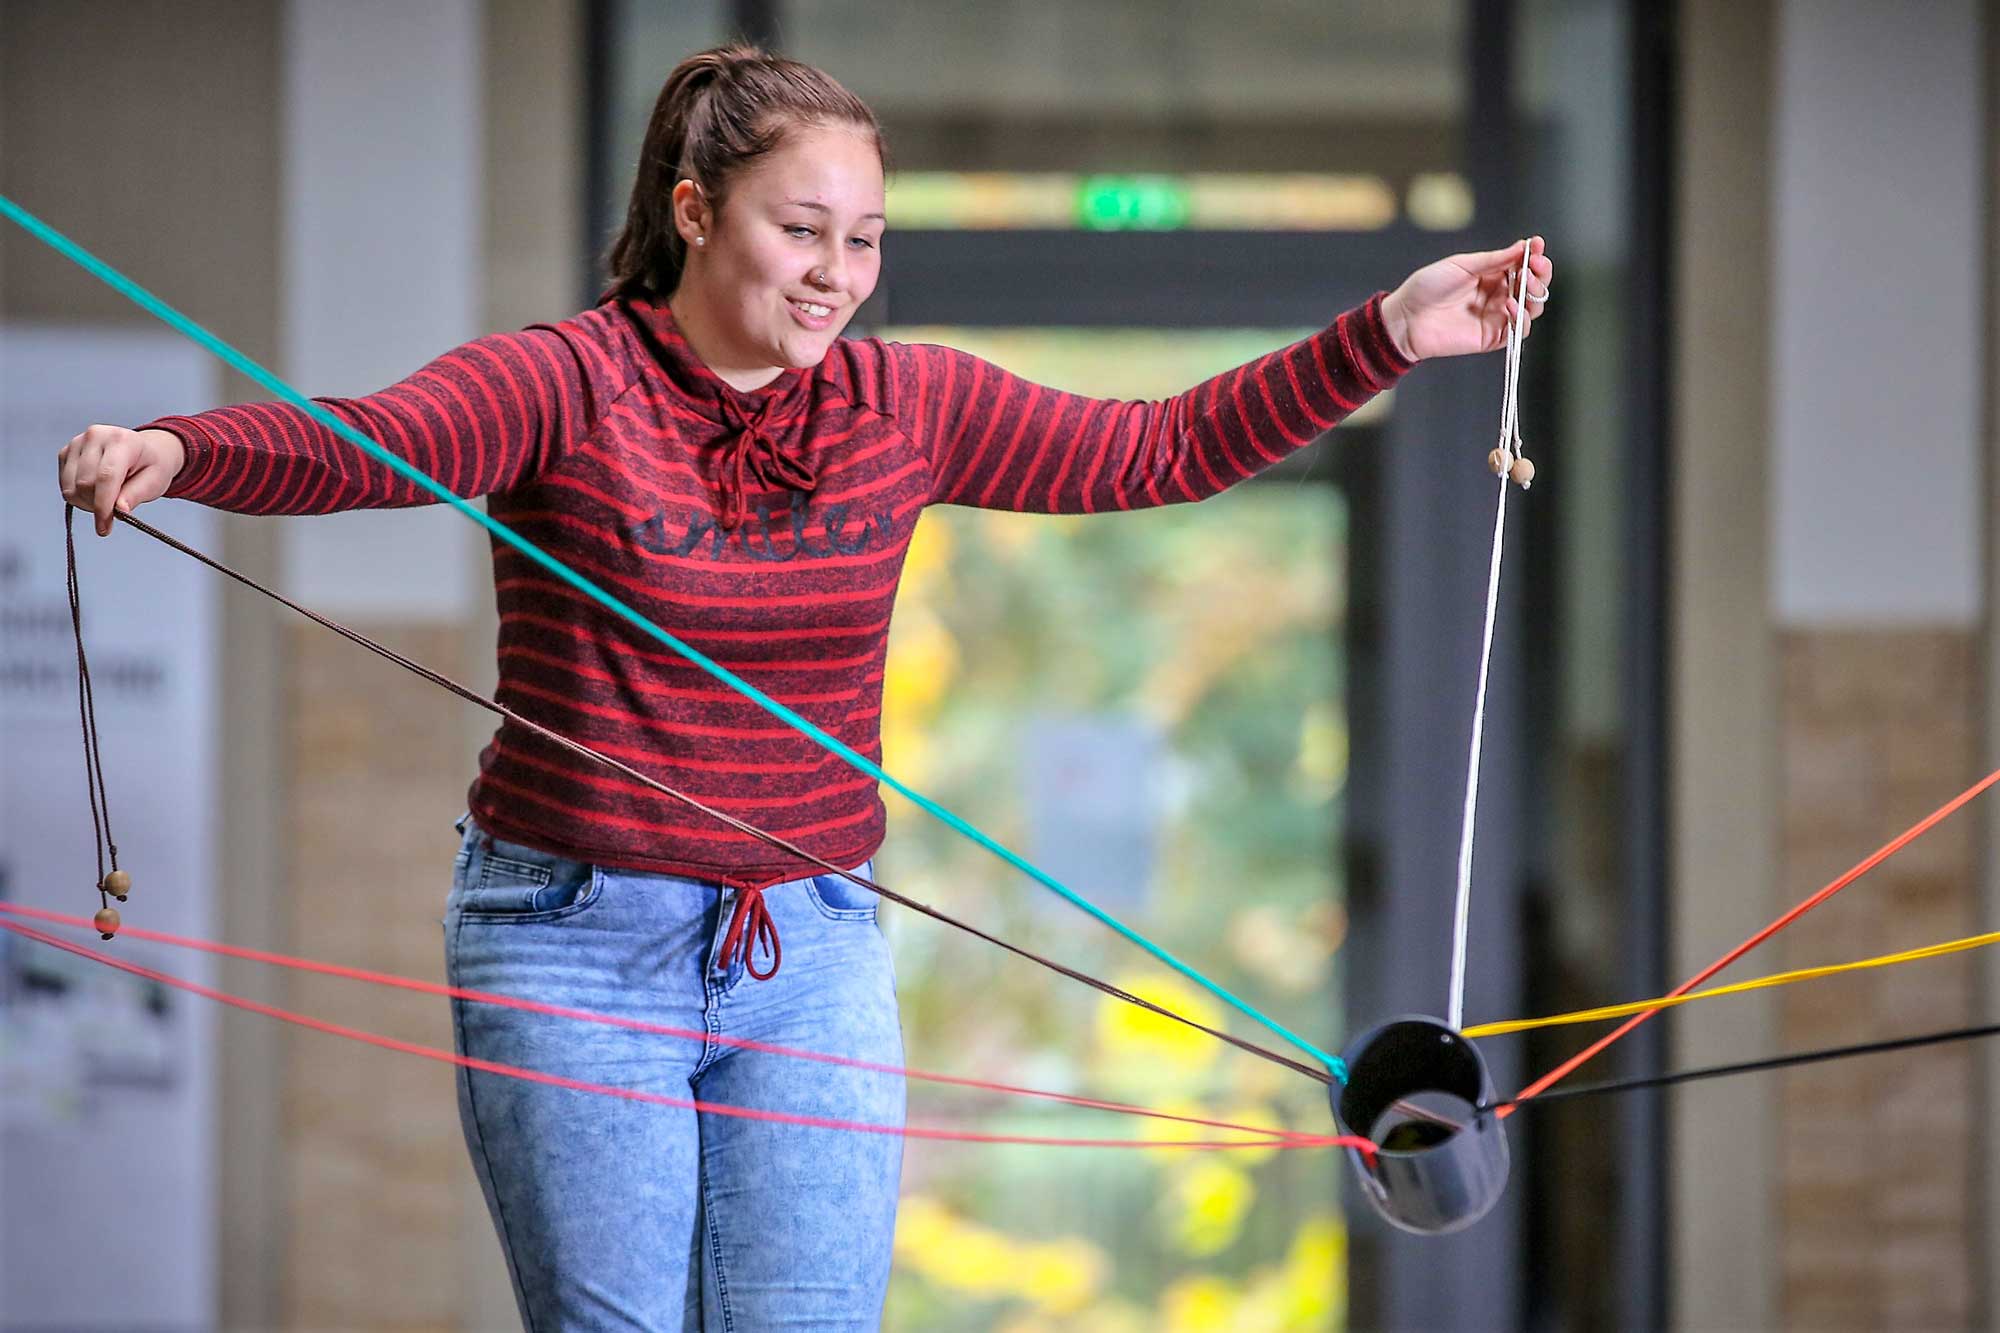 Eine Schülerin spielt ein Gruppenspiel. Sie hält zwei Seile fest, die an einem kleinen Rohr befestigt sind. Von dem Rohr gehen noch 5 weitere Seile ab und Enden außerhalb des Bildausschnittes.